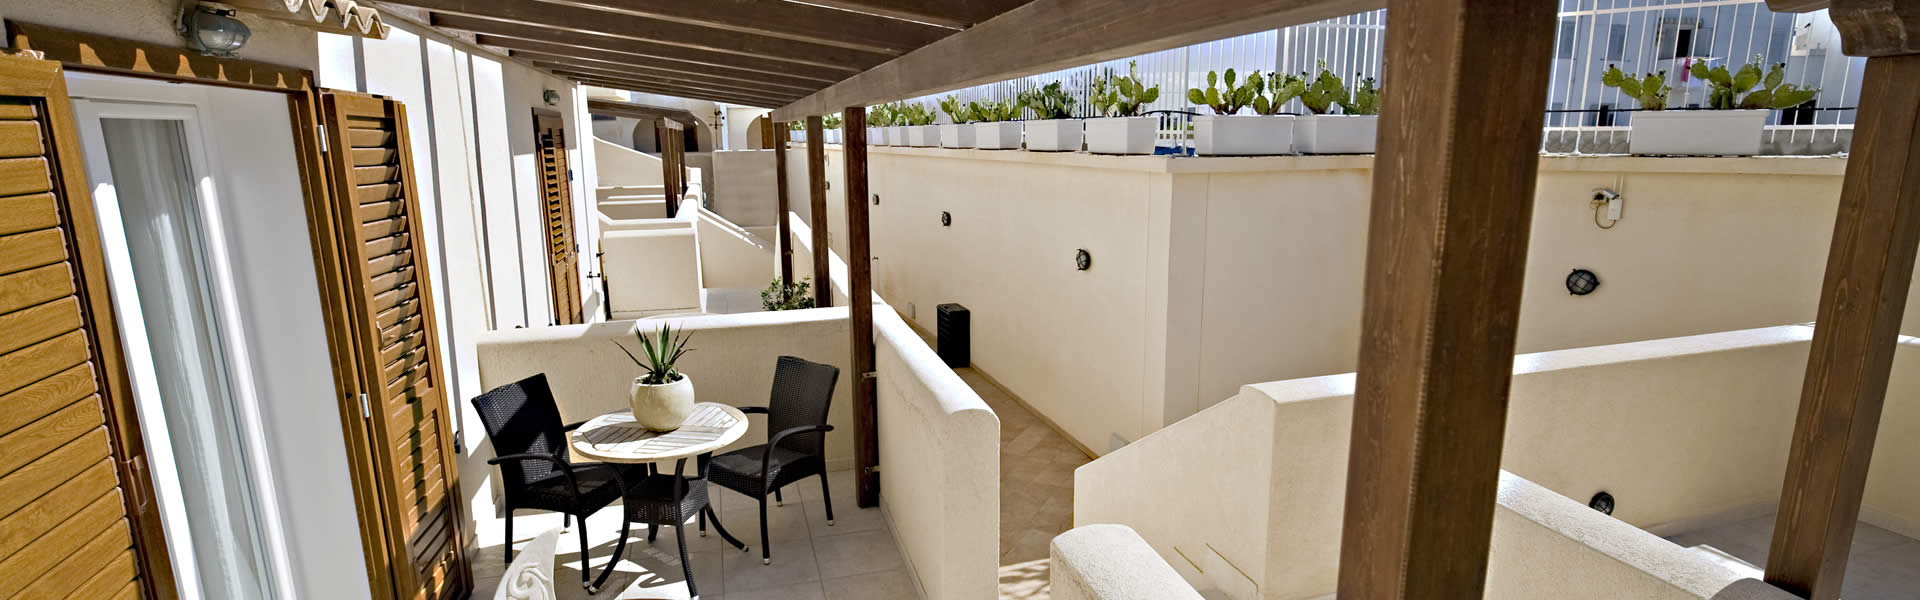 Spaziose ed eleganti, le camere superior dell’Hotel Tempo di Mare offrono un ambiente raffinato dove soggiornare.